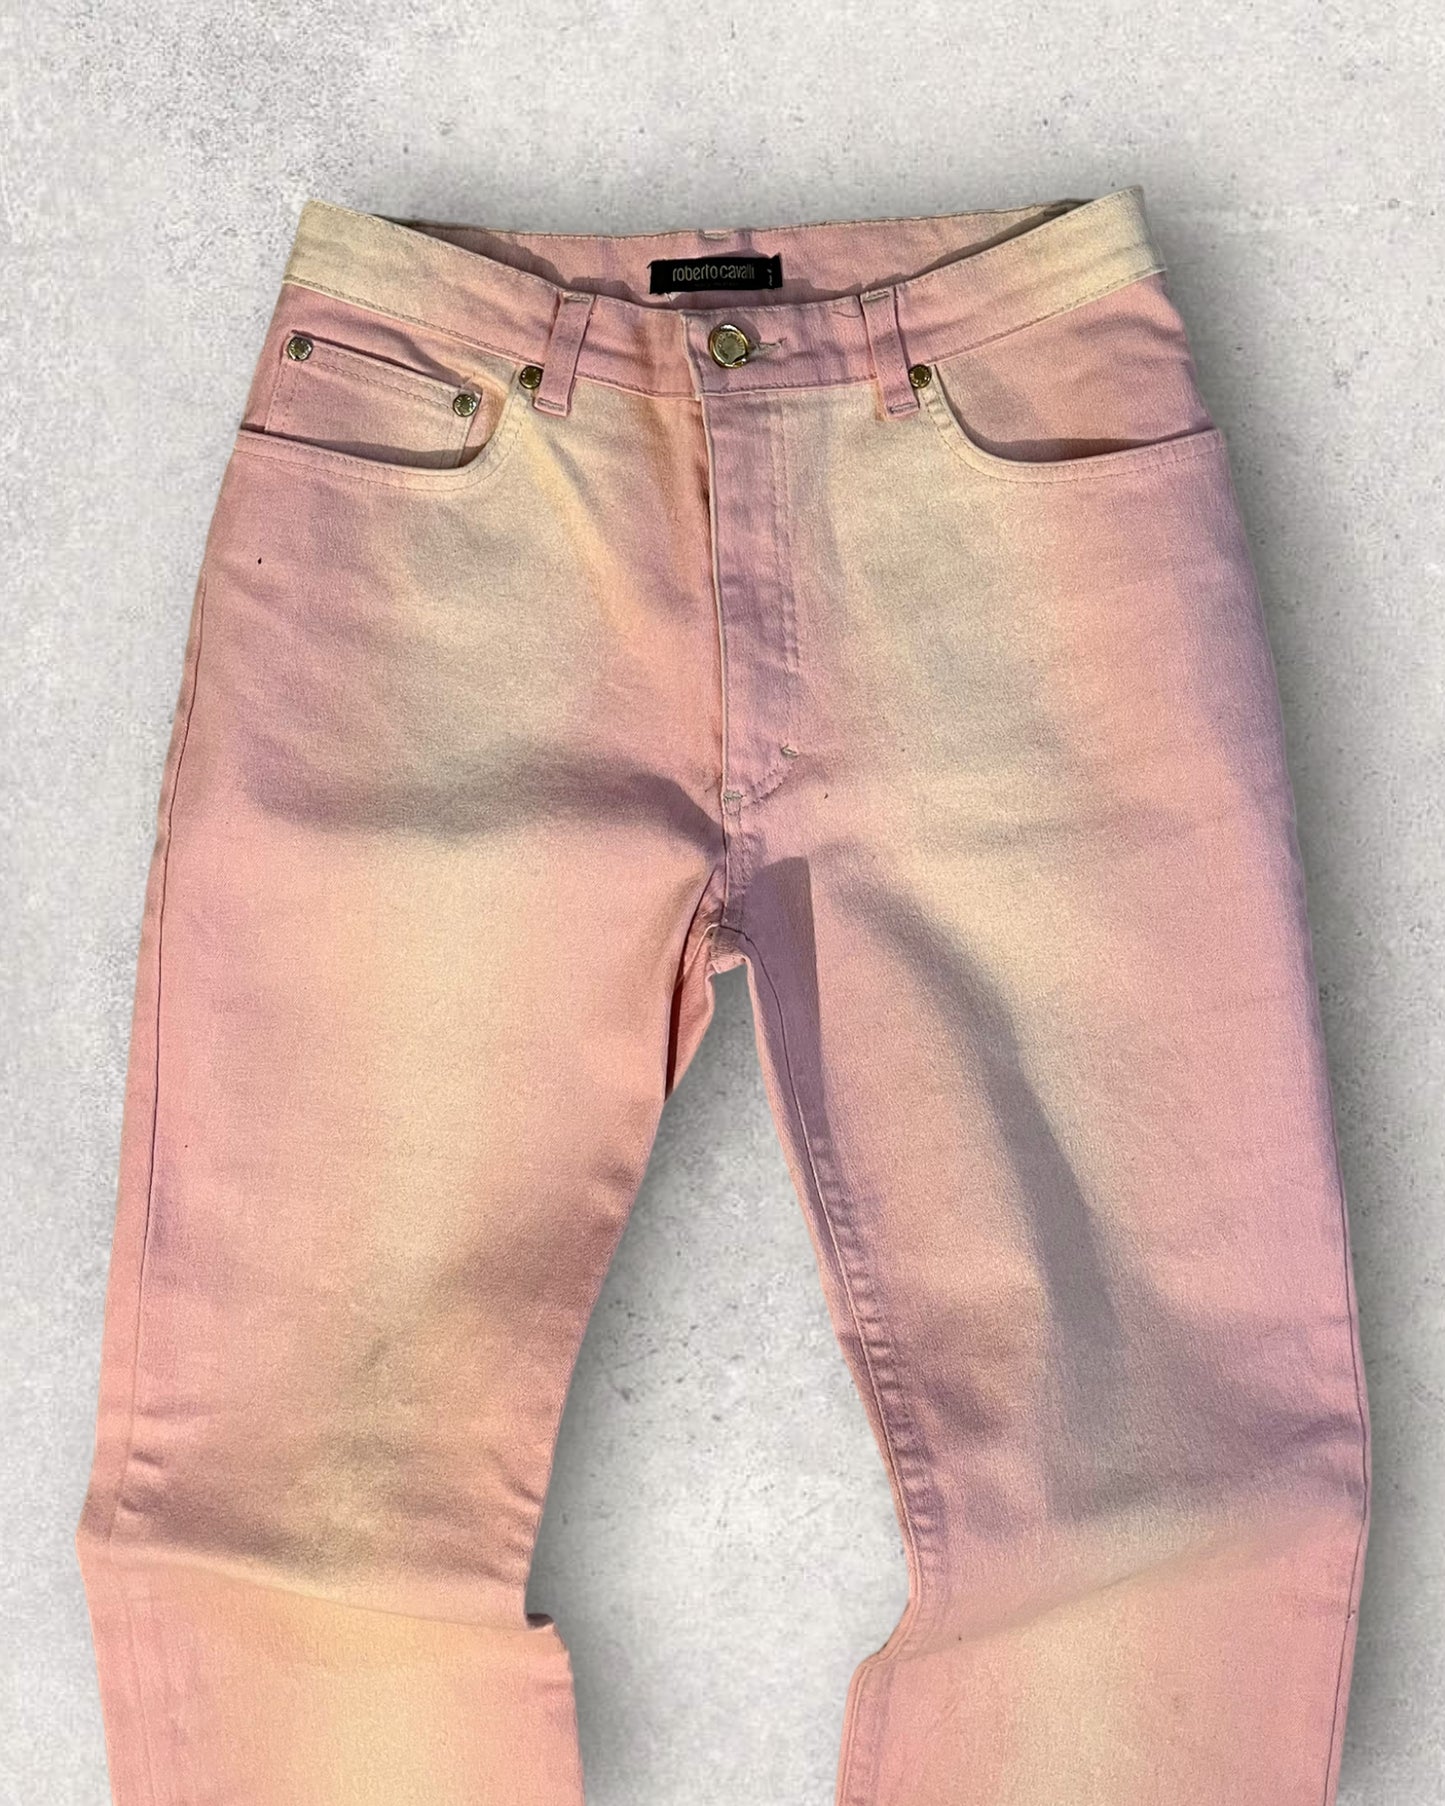 00 年代 Cavalli 褪色粉色长裤 (XS)